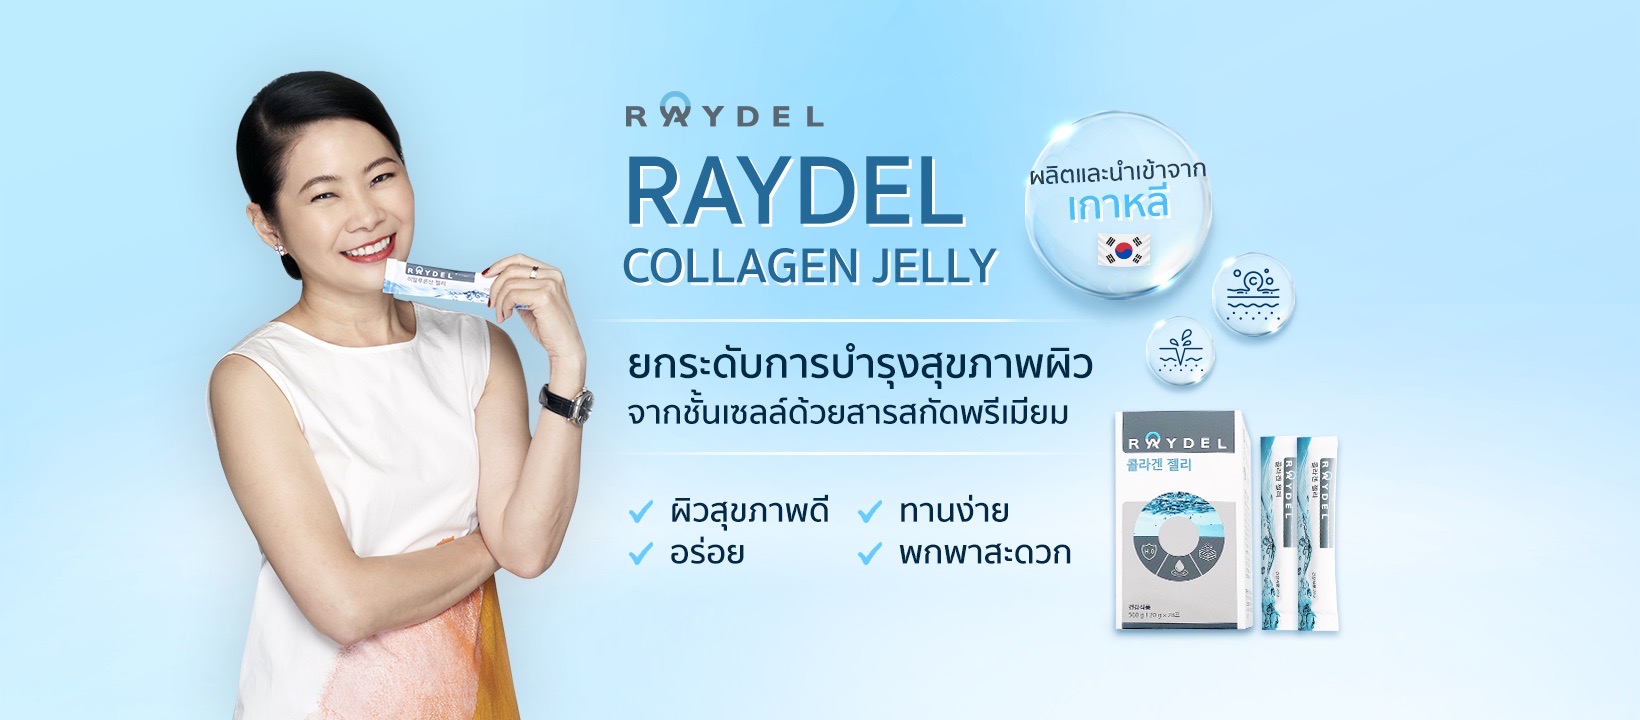 เคล็ดลับสุขภาพผิวดี สไตล์เกาหลีฉบับเอิร์ทมิกซ์  Raydel Collagen Jelly